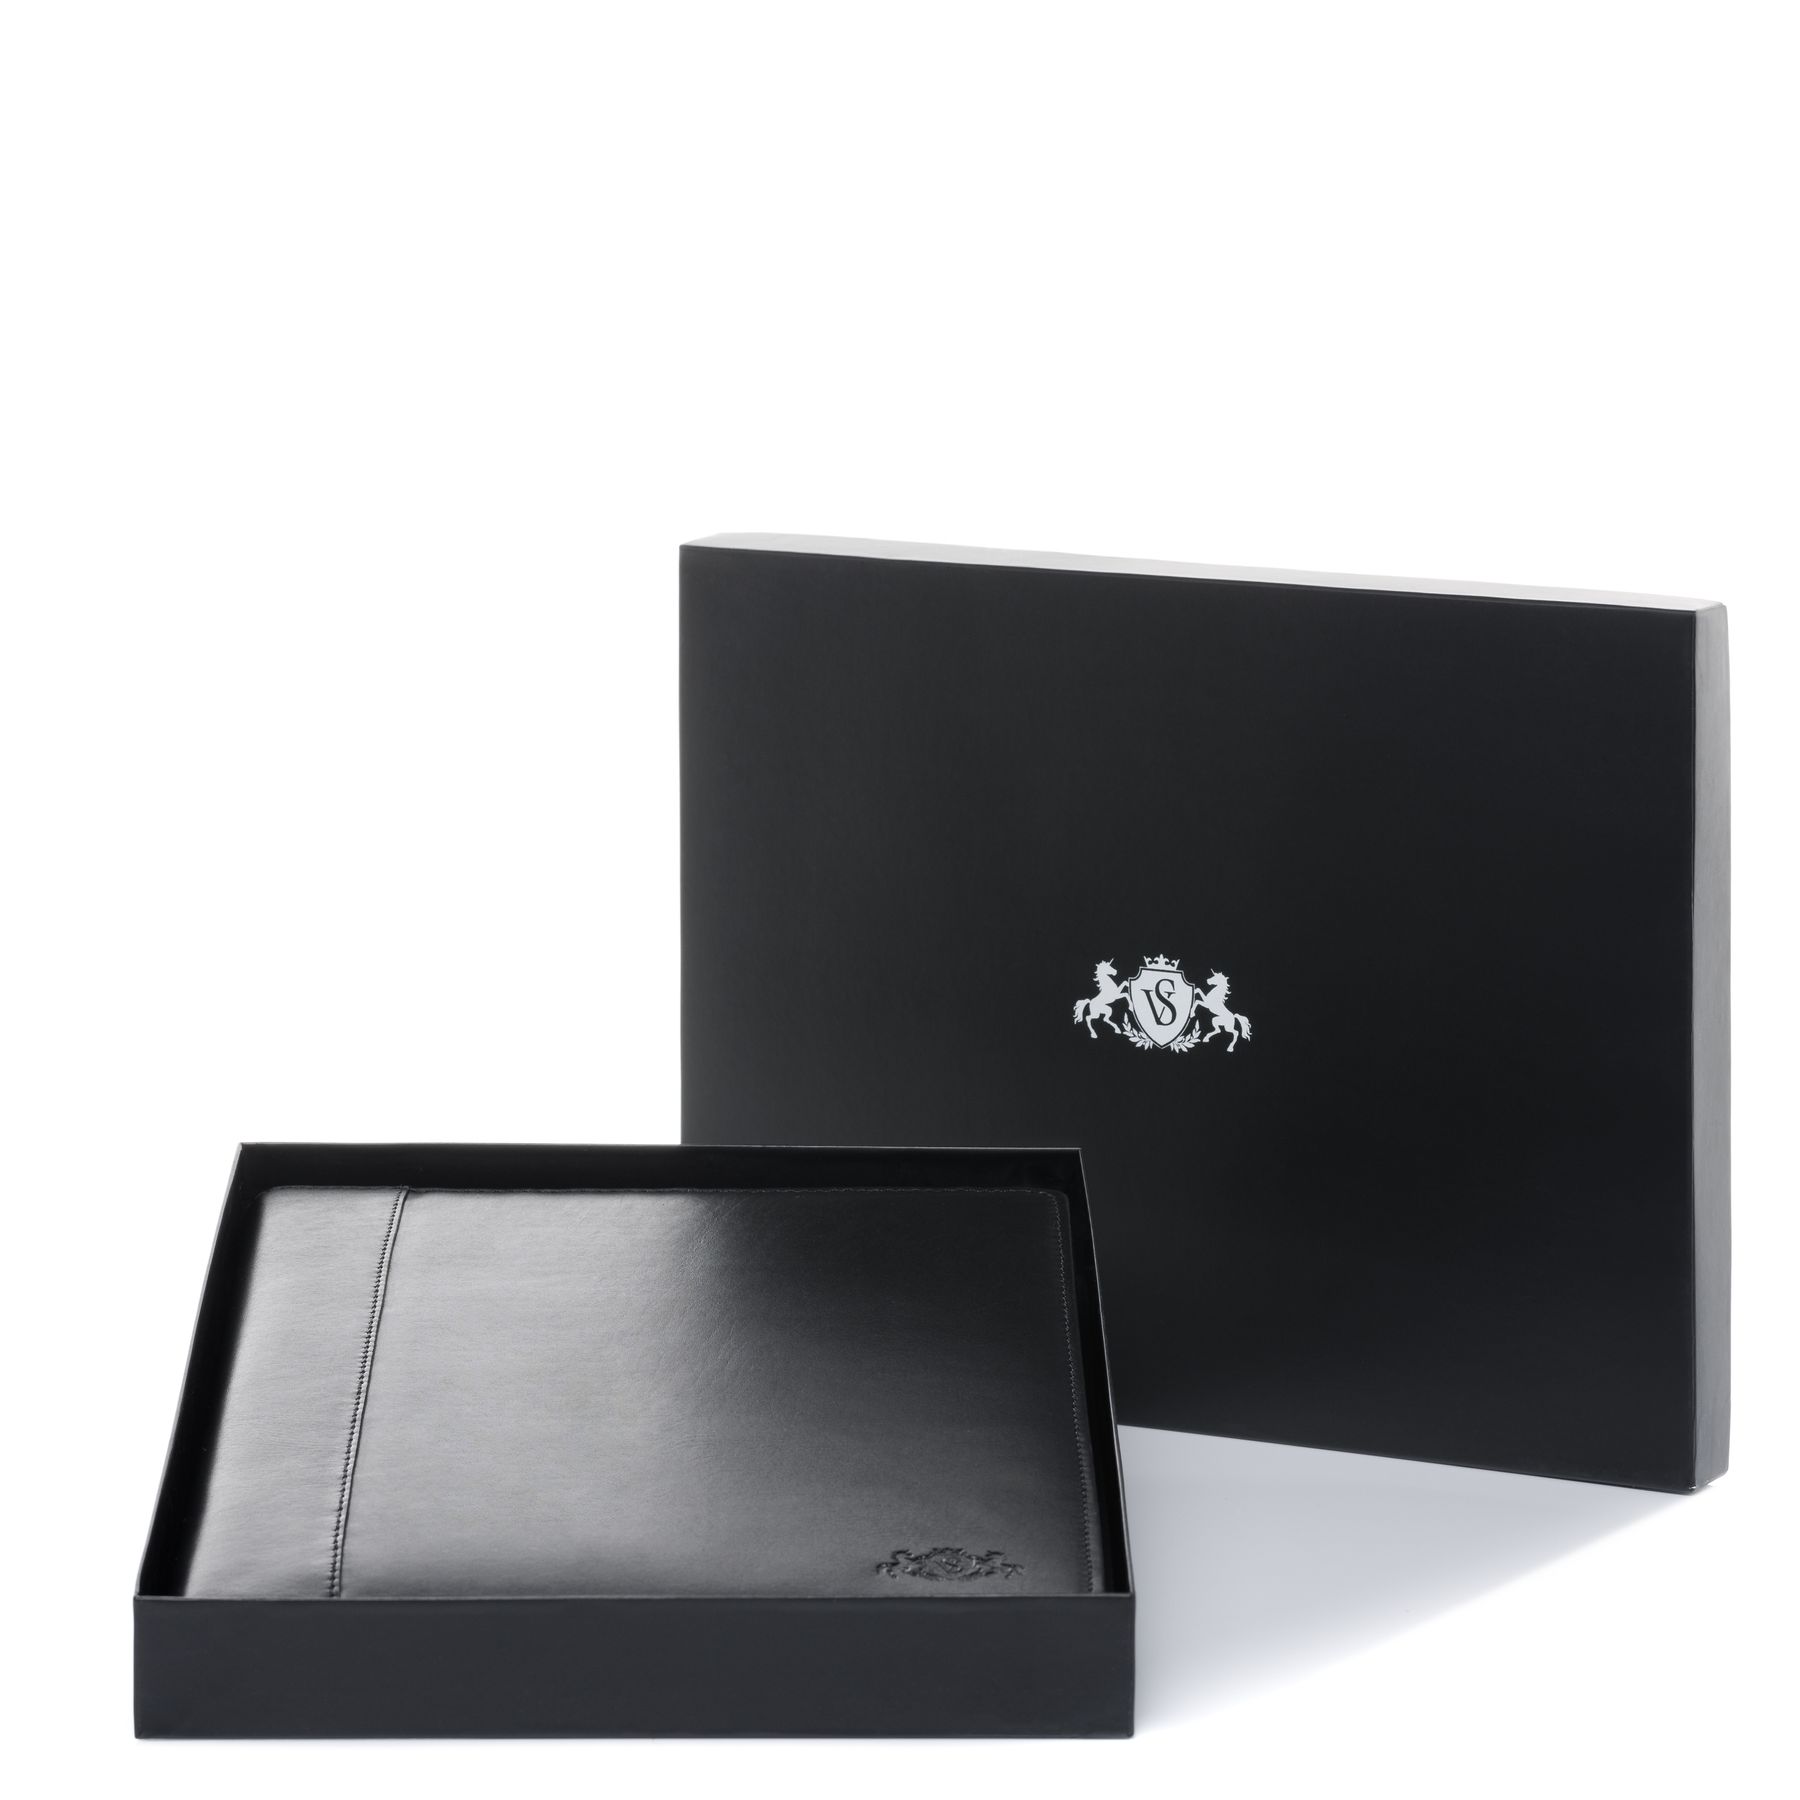 ✓ Classeur MKtape avec 20 pochettes A4 - Noir couleur Noir en stock -  123CONSOMMABLES